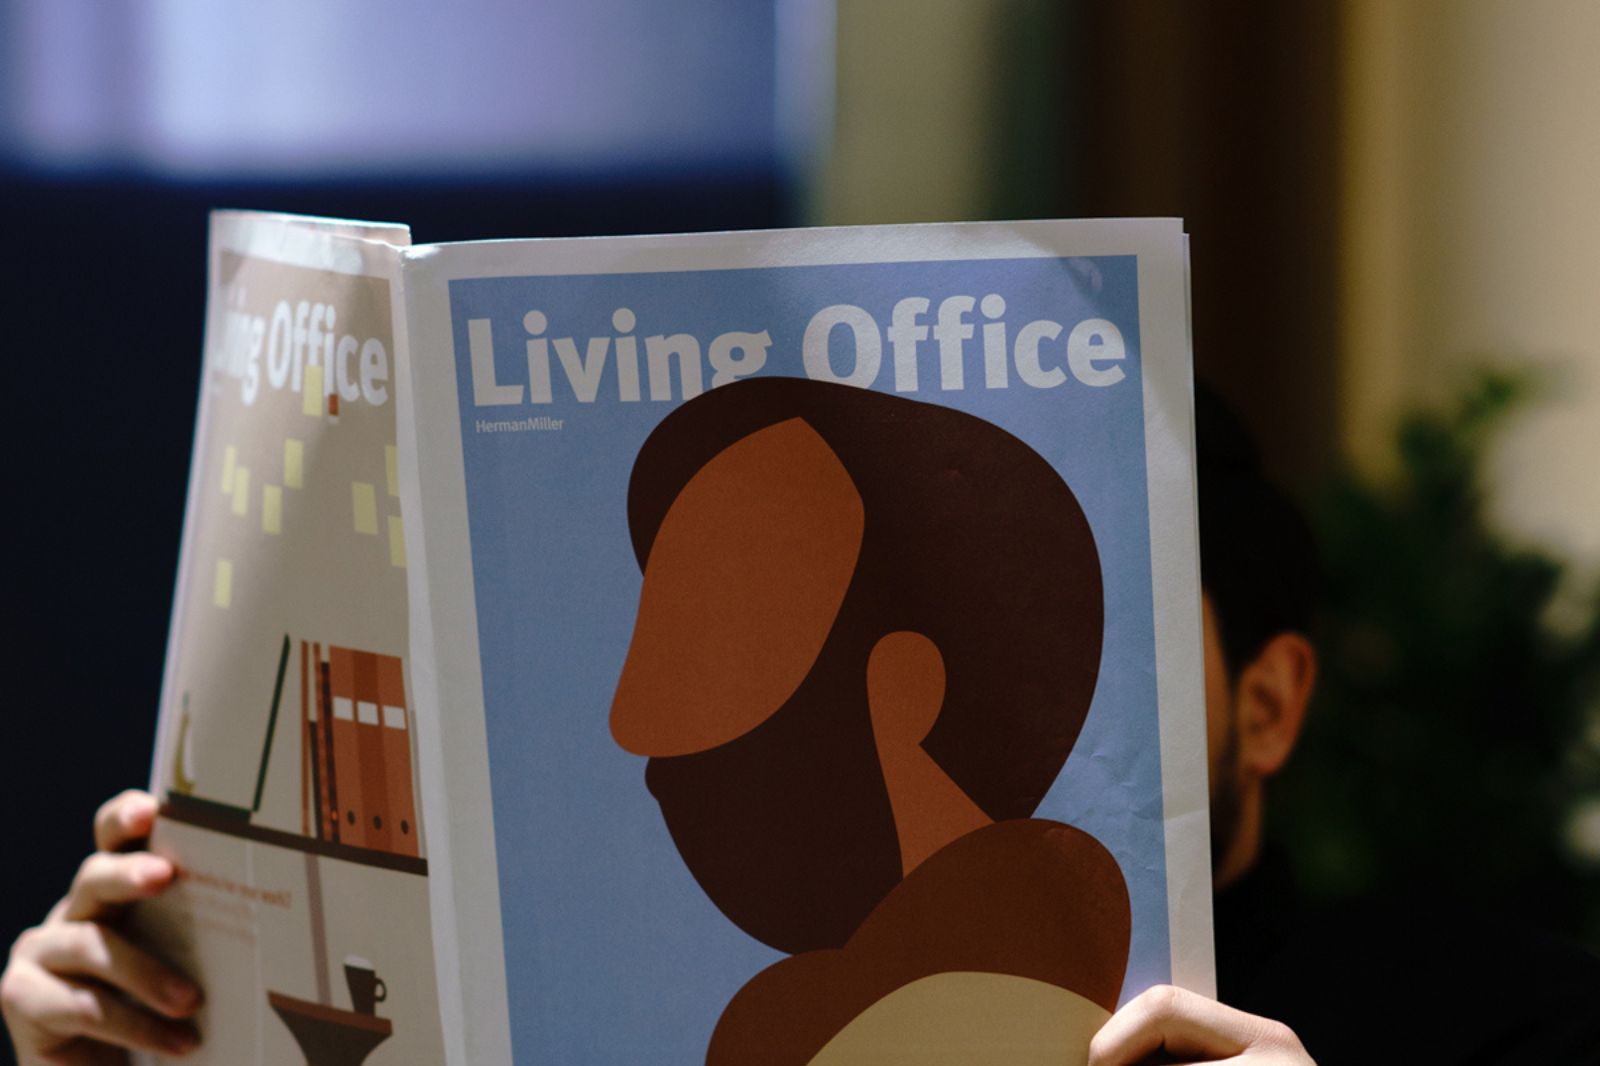 Türkiye Gazetesi: Hantal Değil Uydu Ofisler Tercih Ediliyor